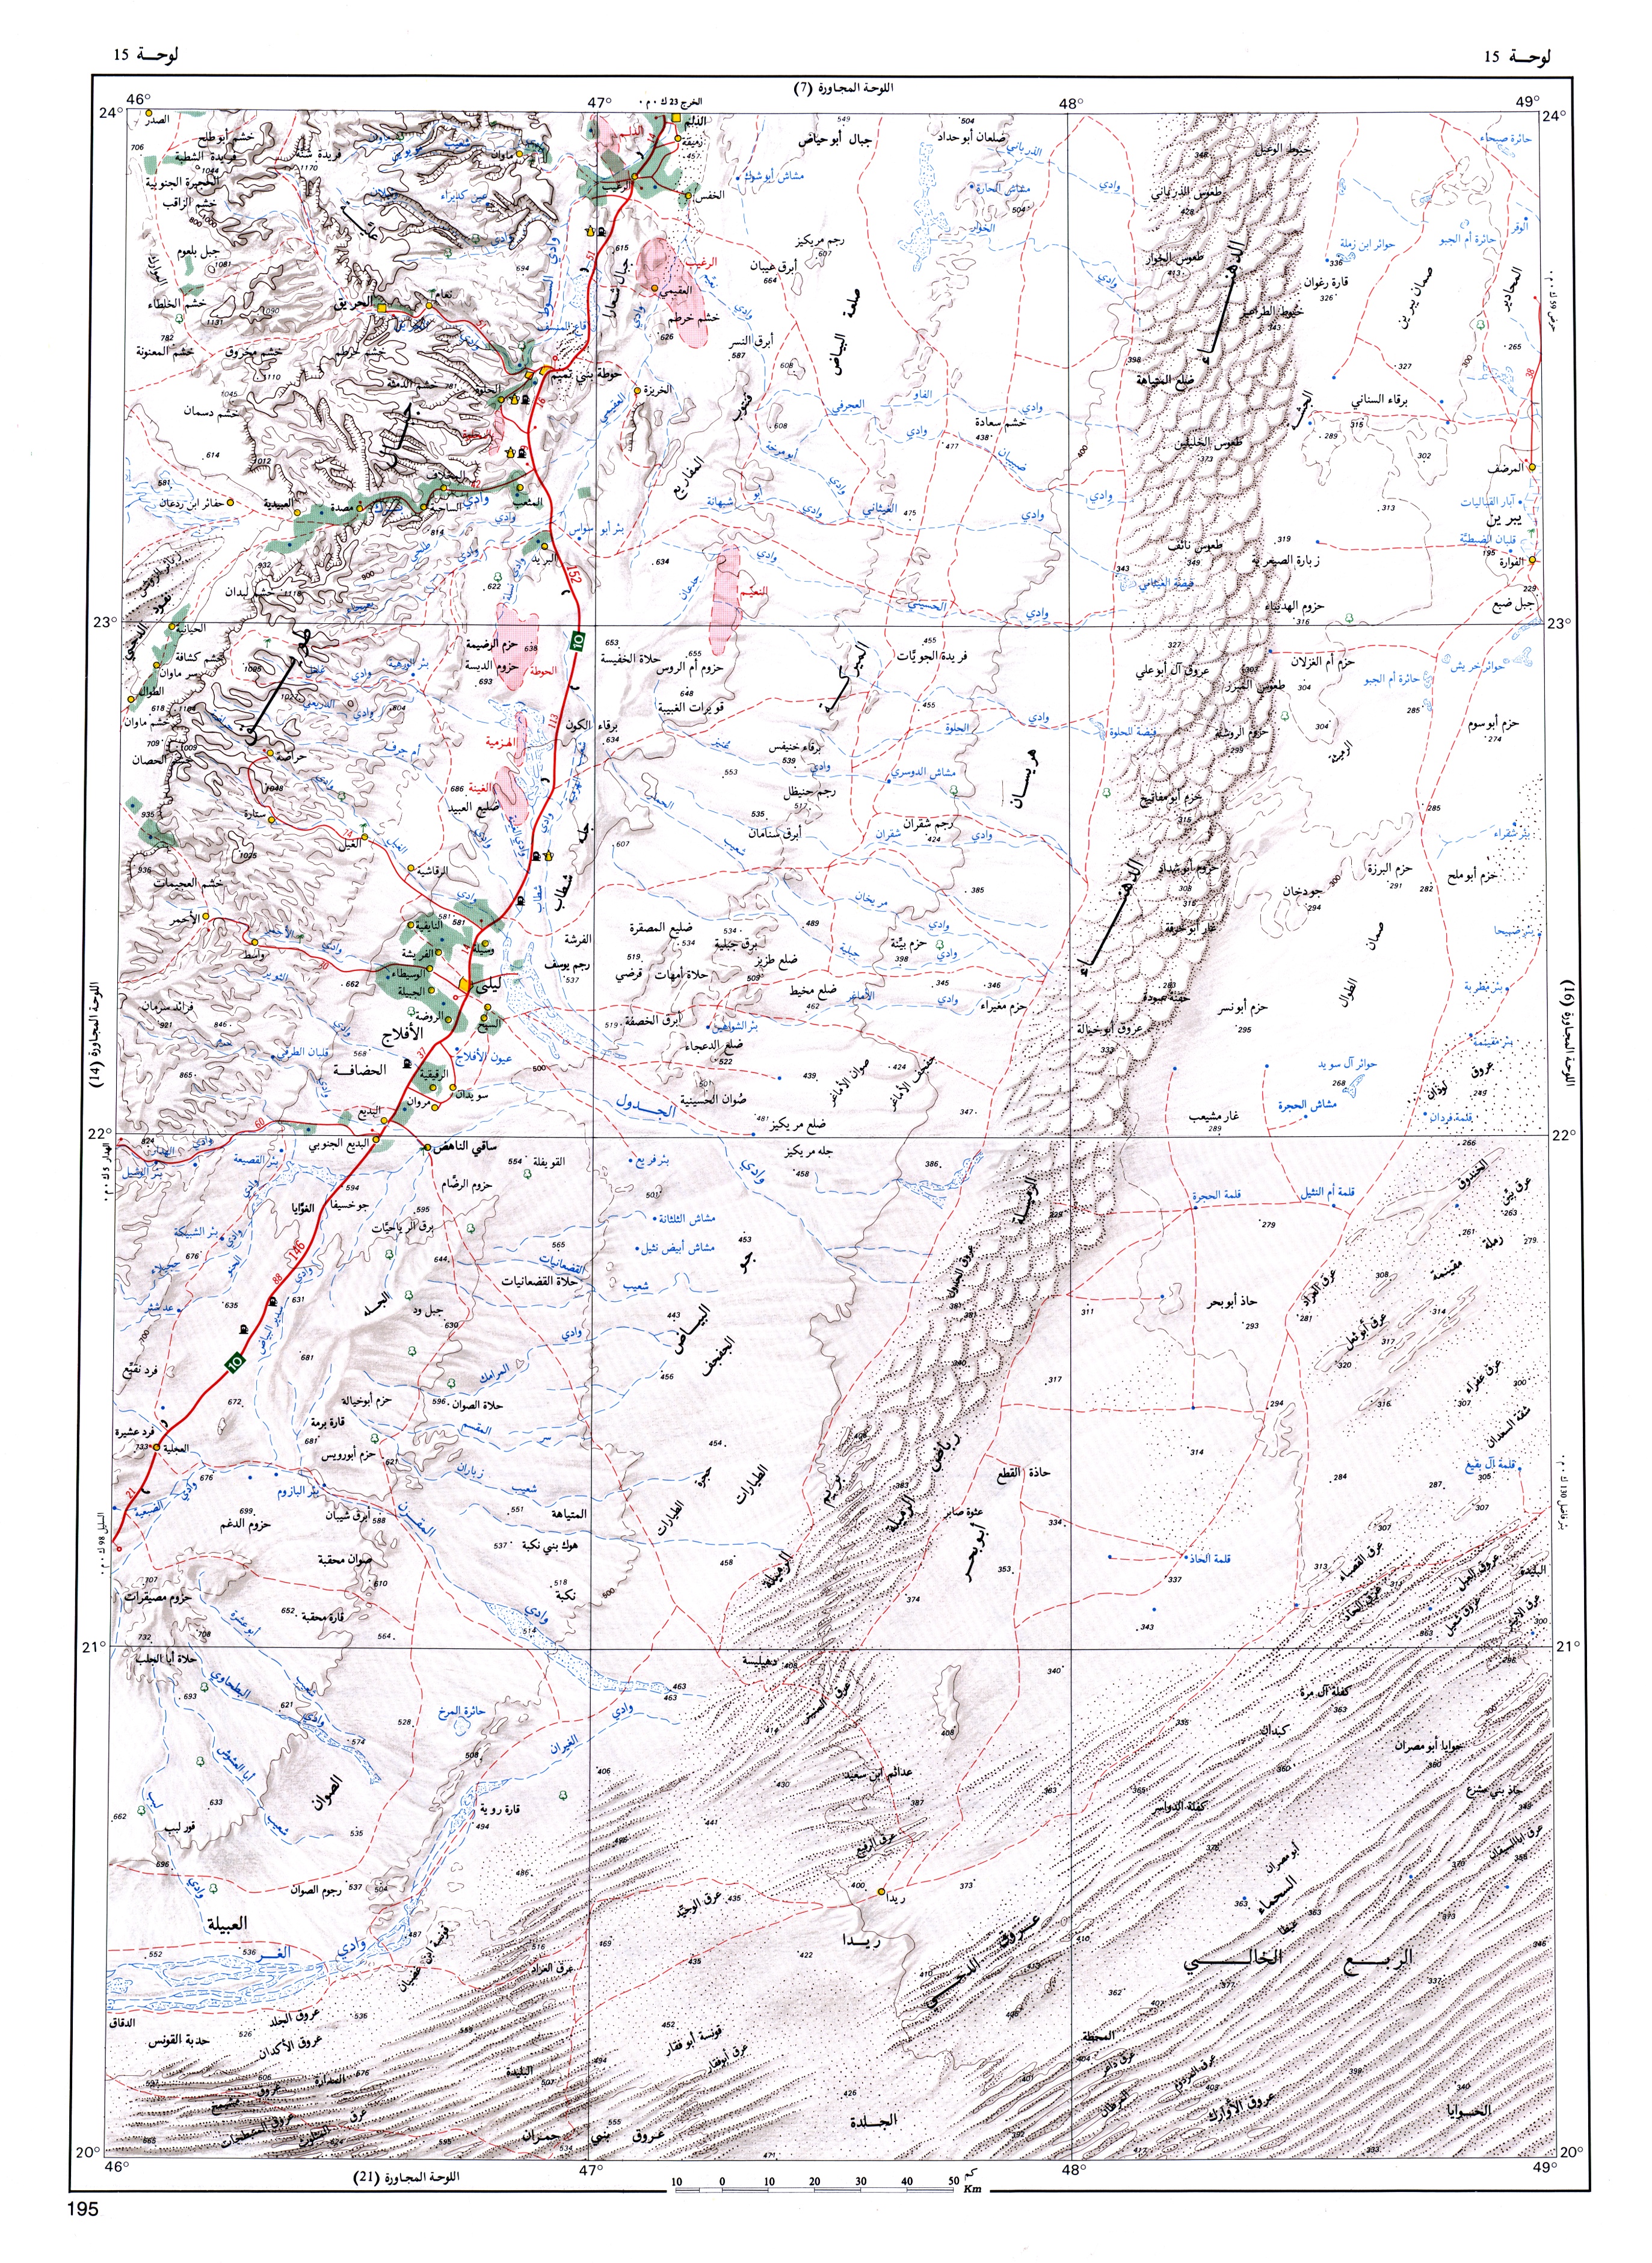 خريطة رقم 15 حوطة بني تميم وجزء من شمال الربع الخالي map fig